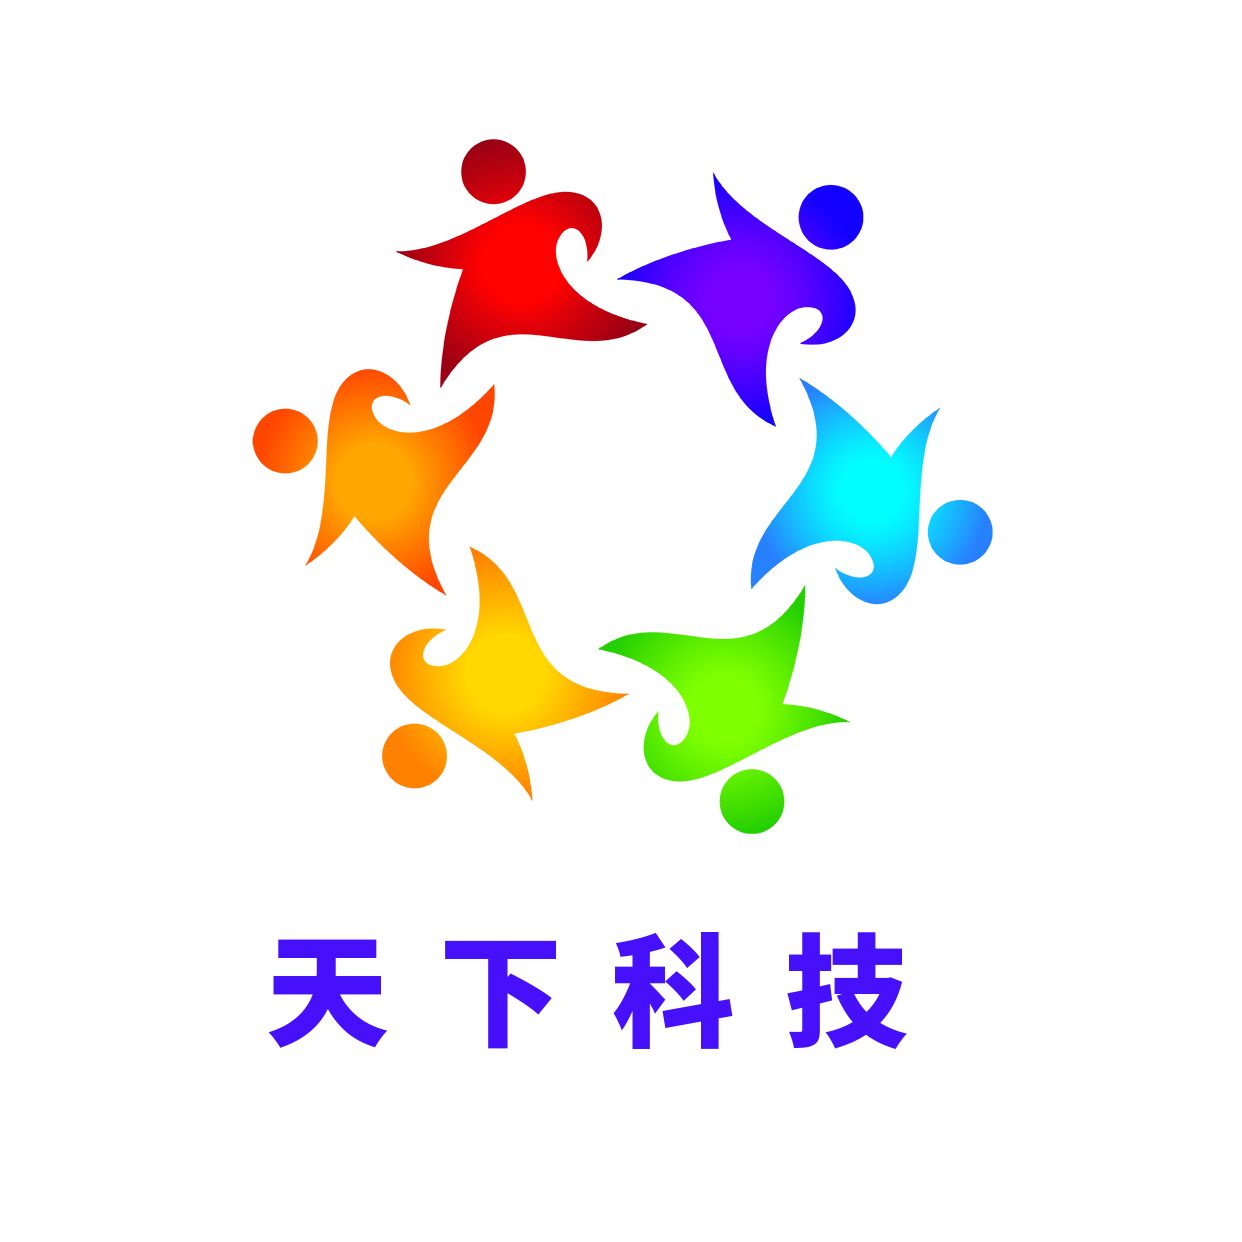 logo所有的多样性联合国伙伴关系团队概念元素图标标志